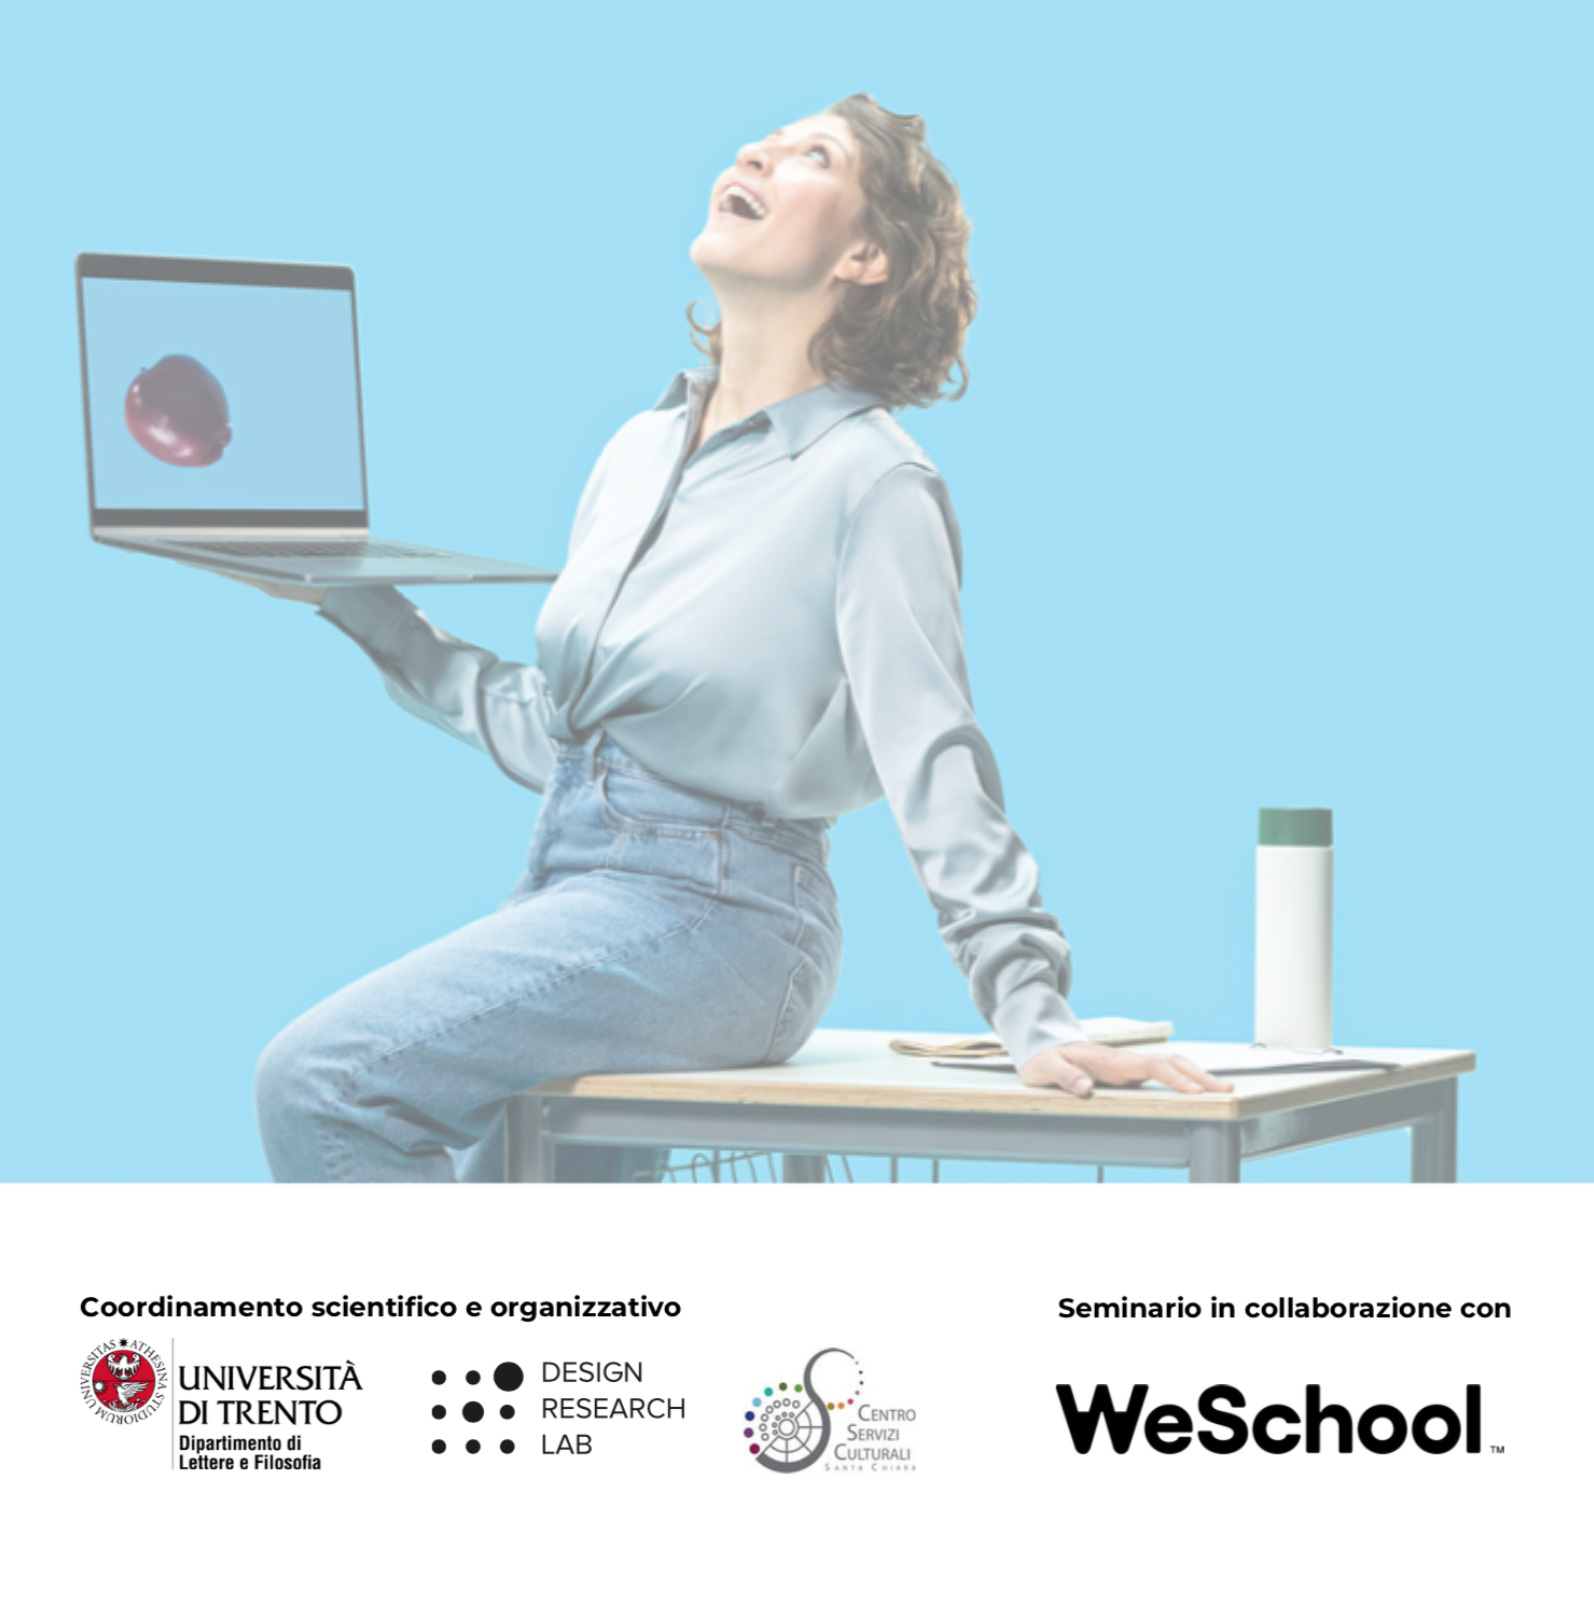 Didattica digitale e metodologie innovative | Webinar in collaborazione con WeSchool